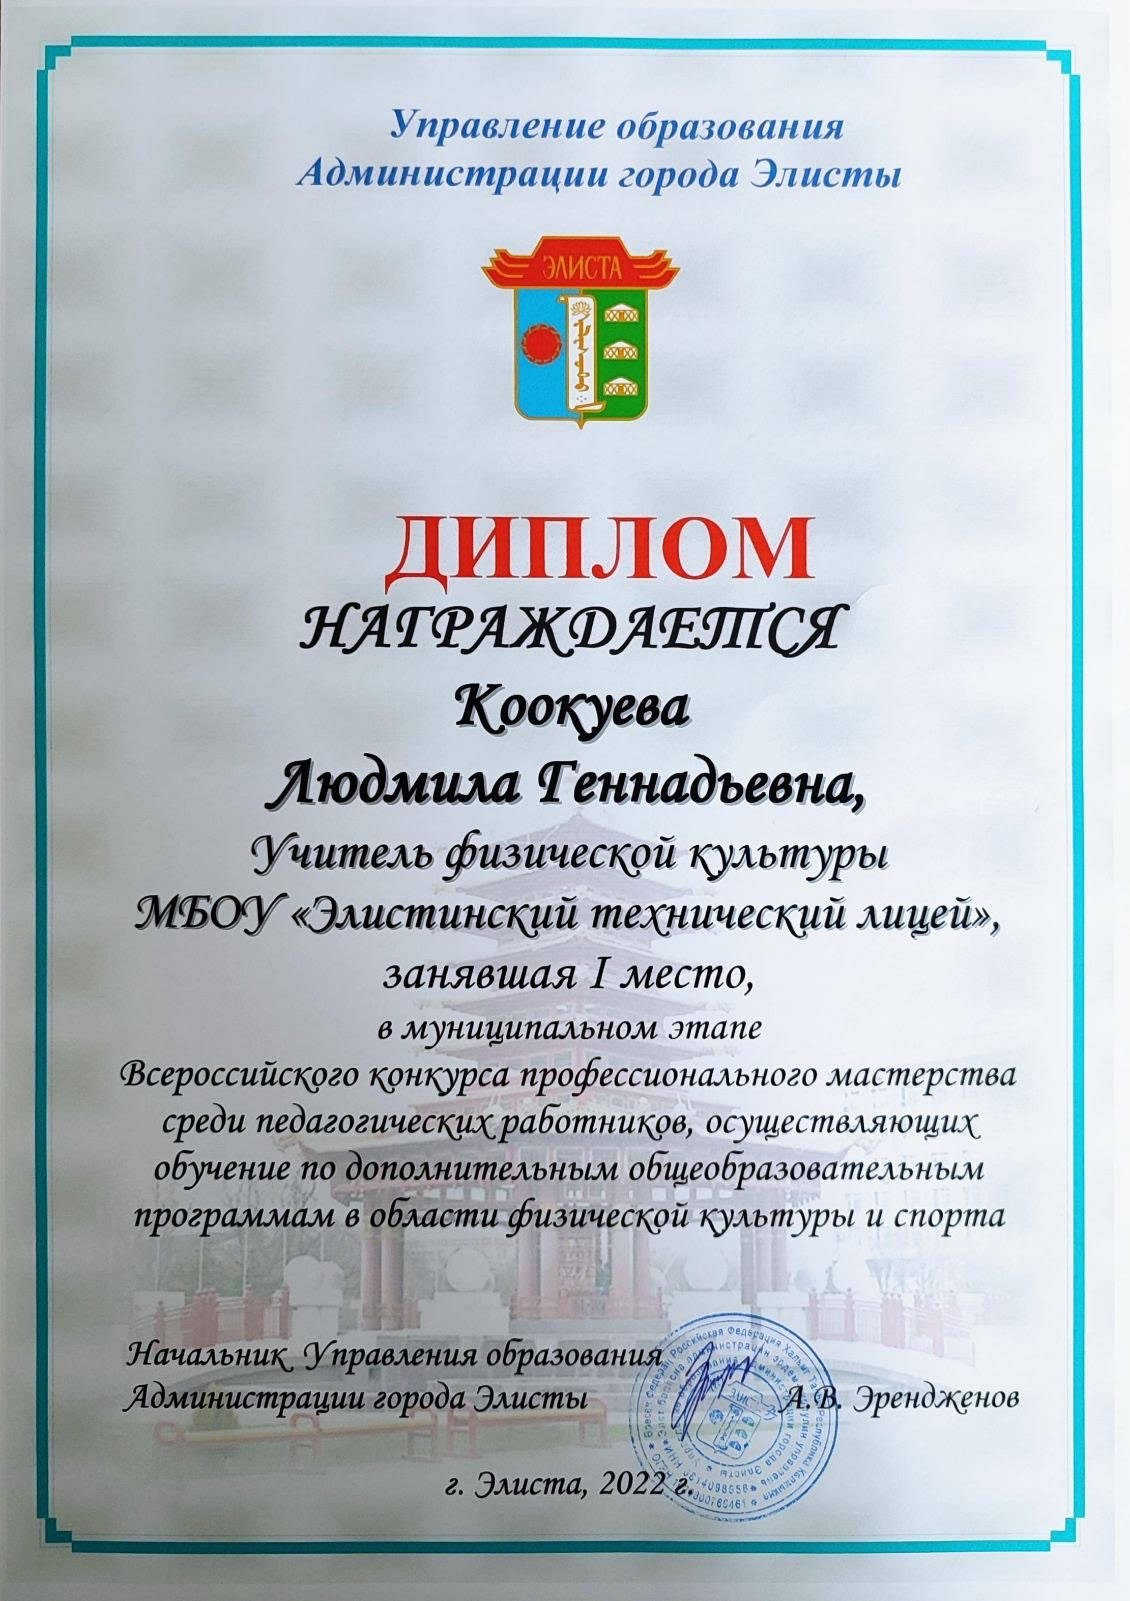 Поздравляем учителя физической культуры Коокуеву Людмилу Геннадьевну